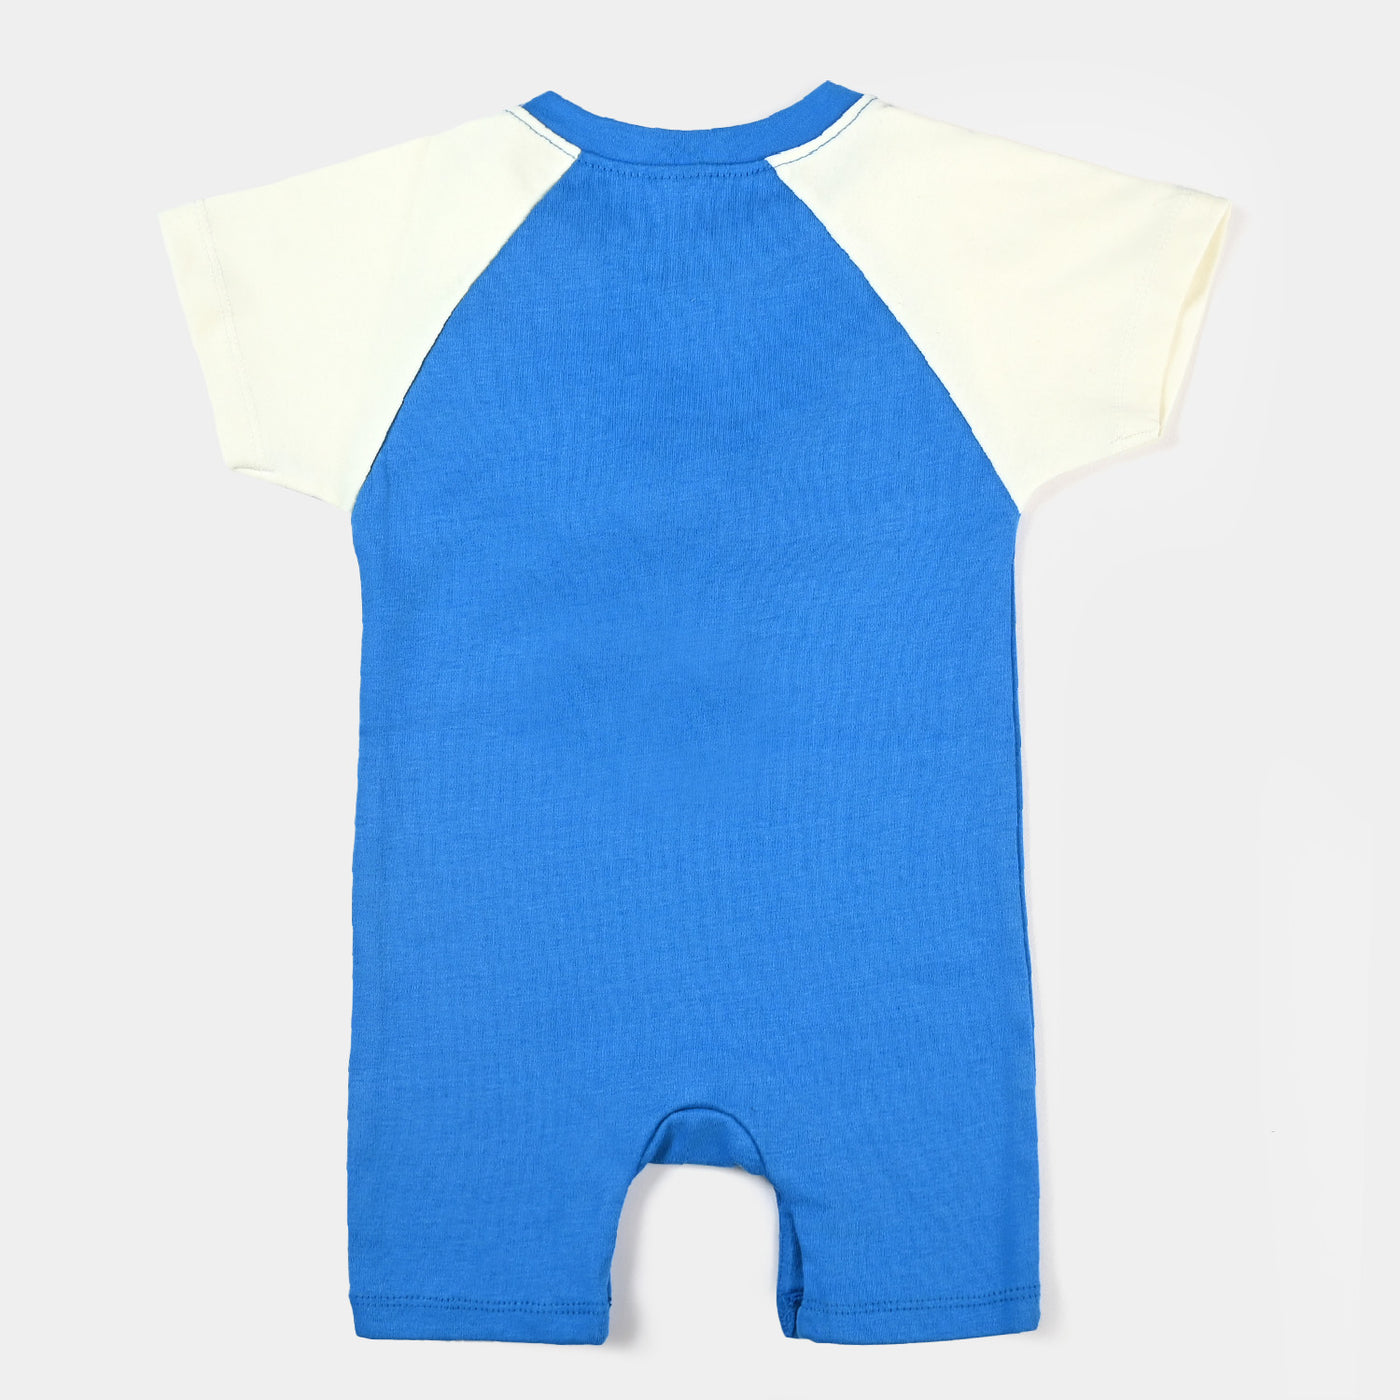 Infant Boys Cotton Interlock Knitted Romper Smile - B.Blue